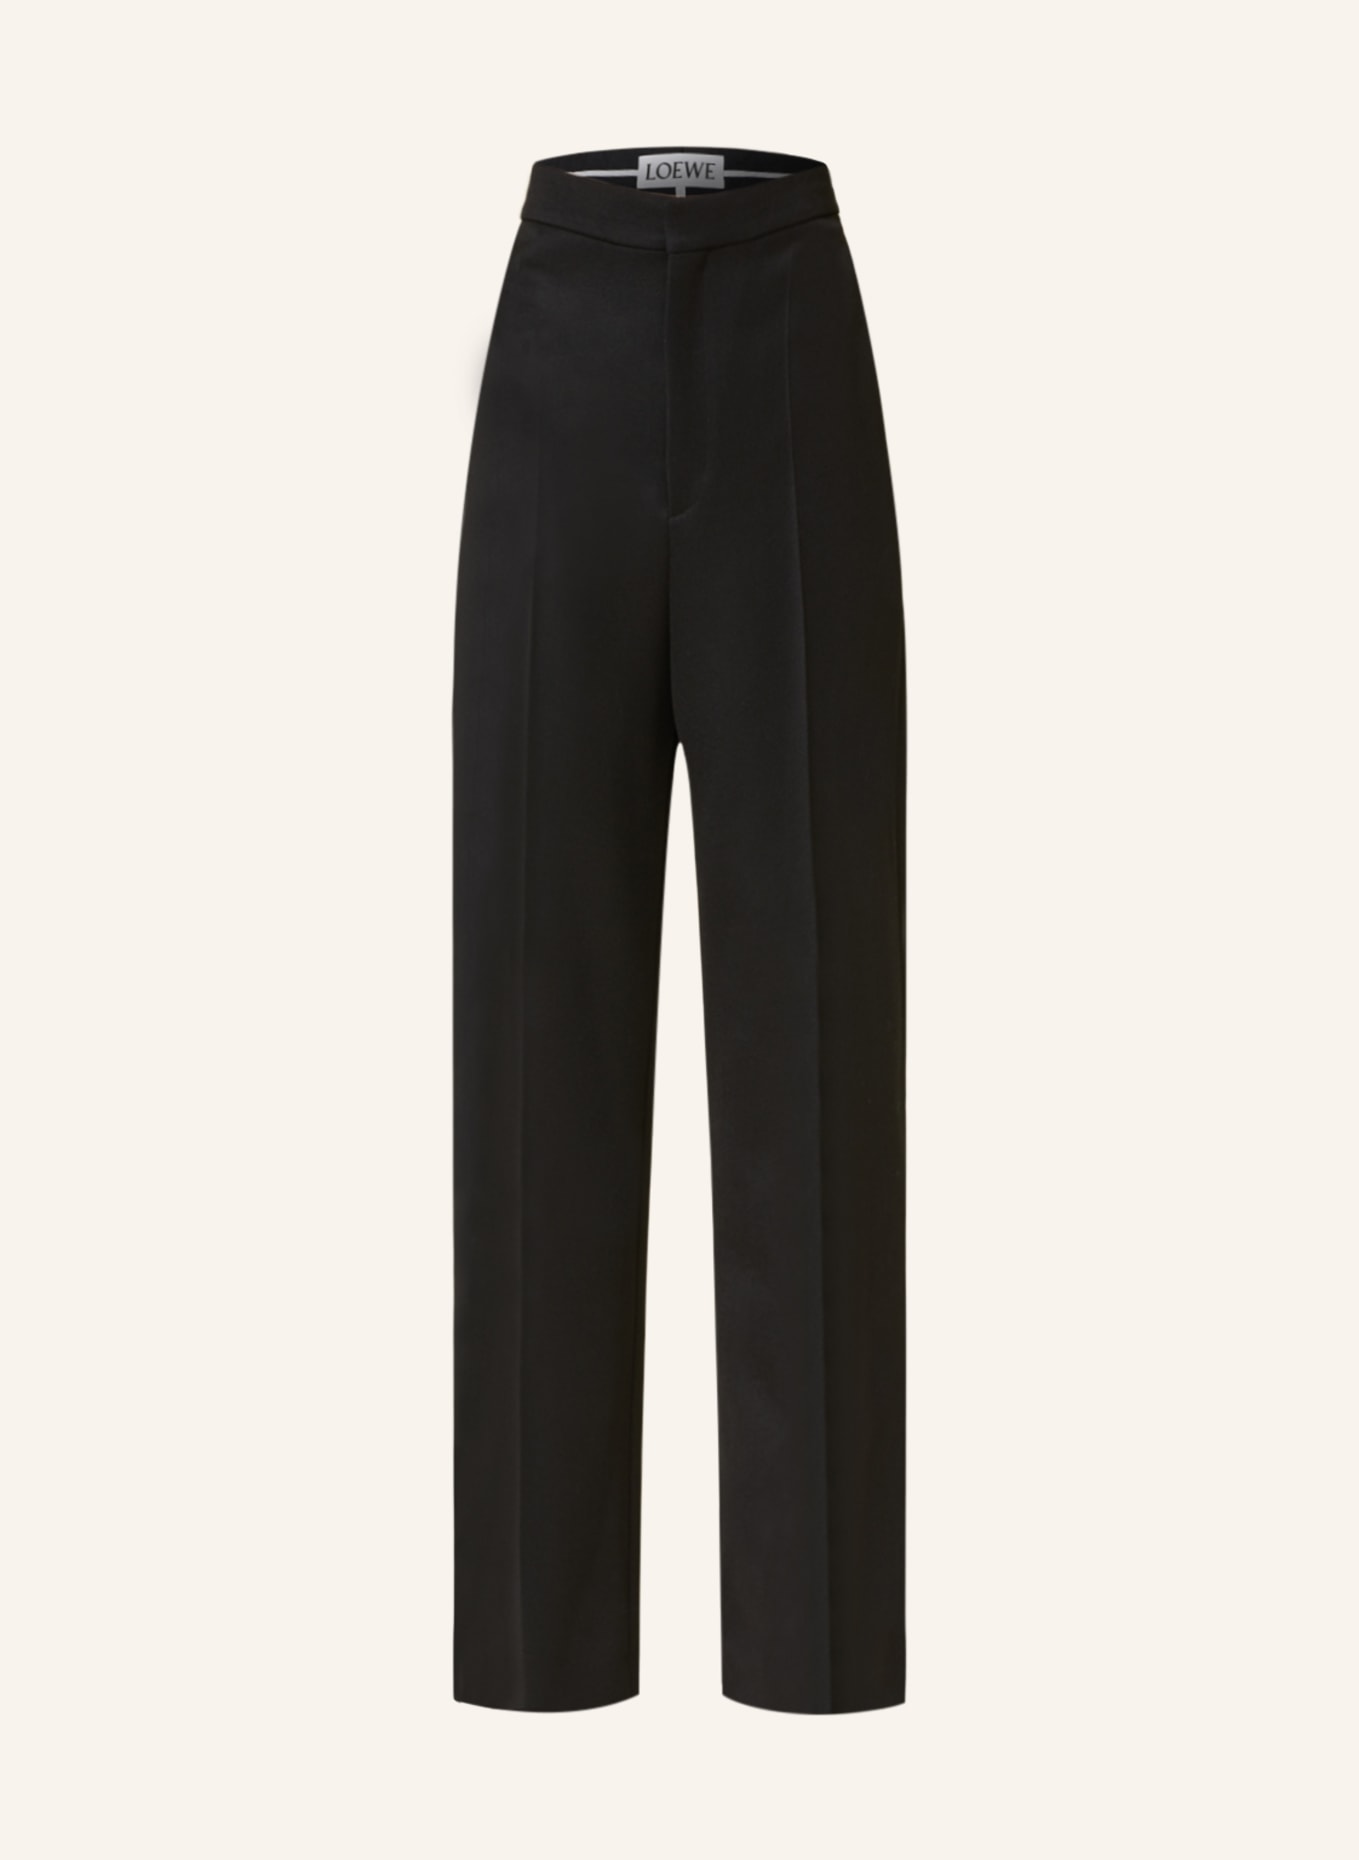 LOEWE Wide leg trousers, Color: BLACK (Image 1)